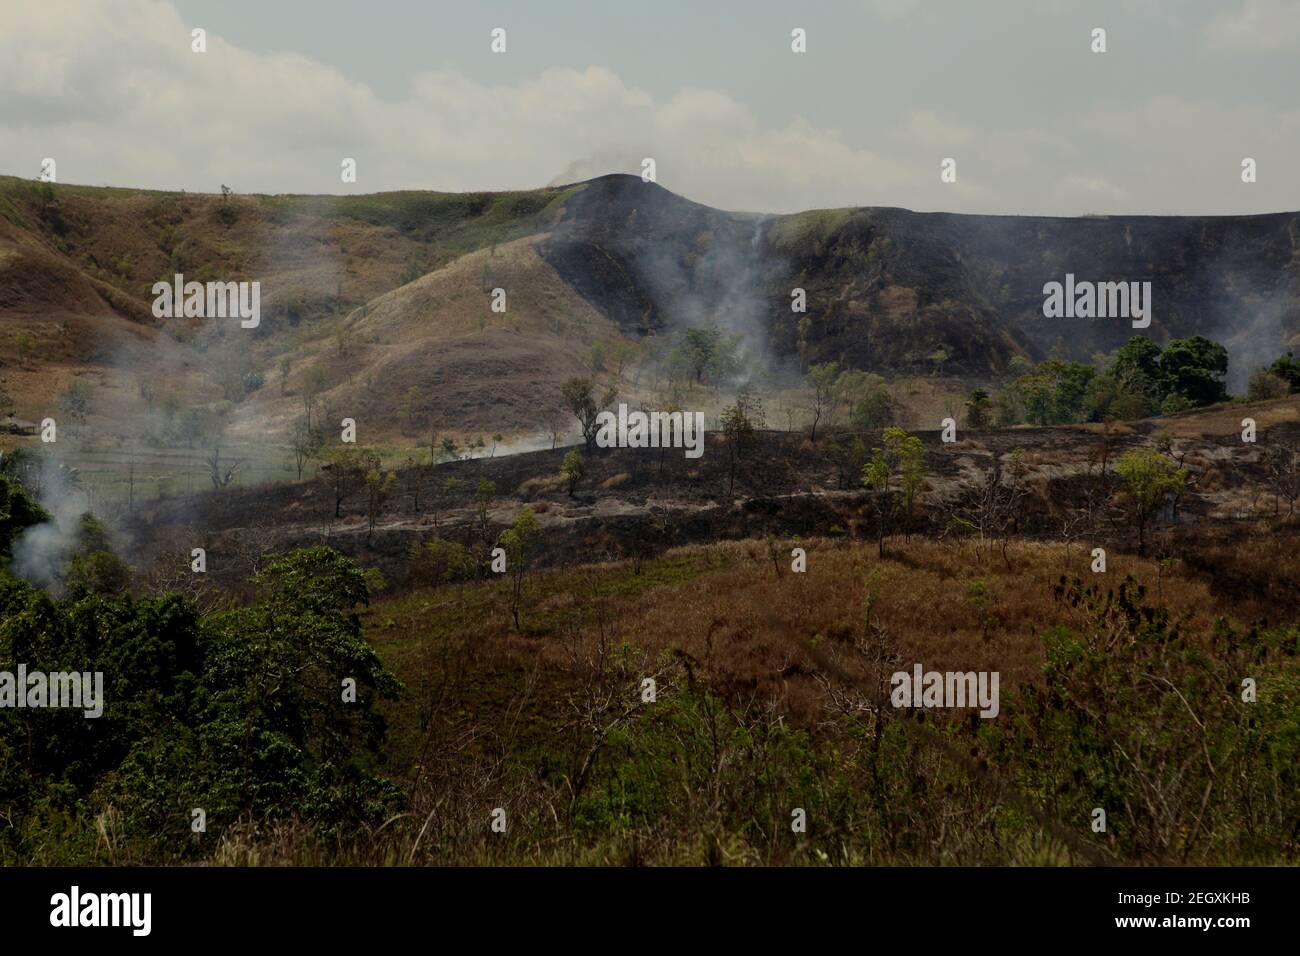 Feuer auf Sträuchern und Grünland während der Trockenzeit auf Sumba Island, einer Insel im Osten Indonesiens, auf der regelmäßig Trockenheit herrscht. Stockfoto